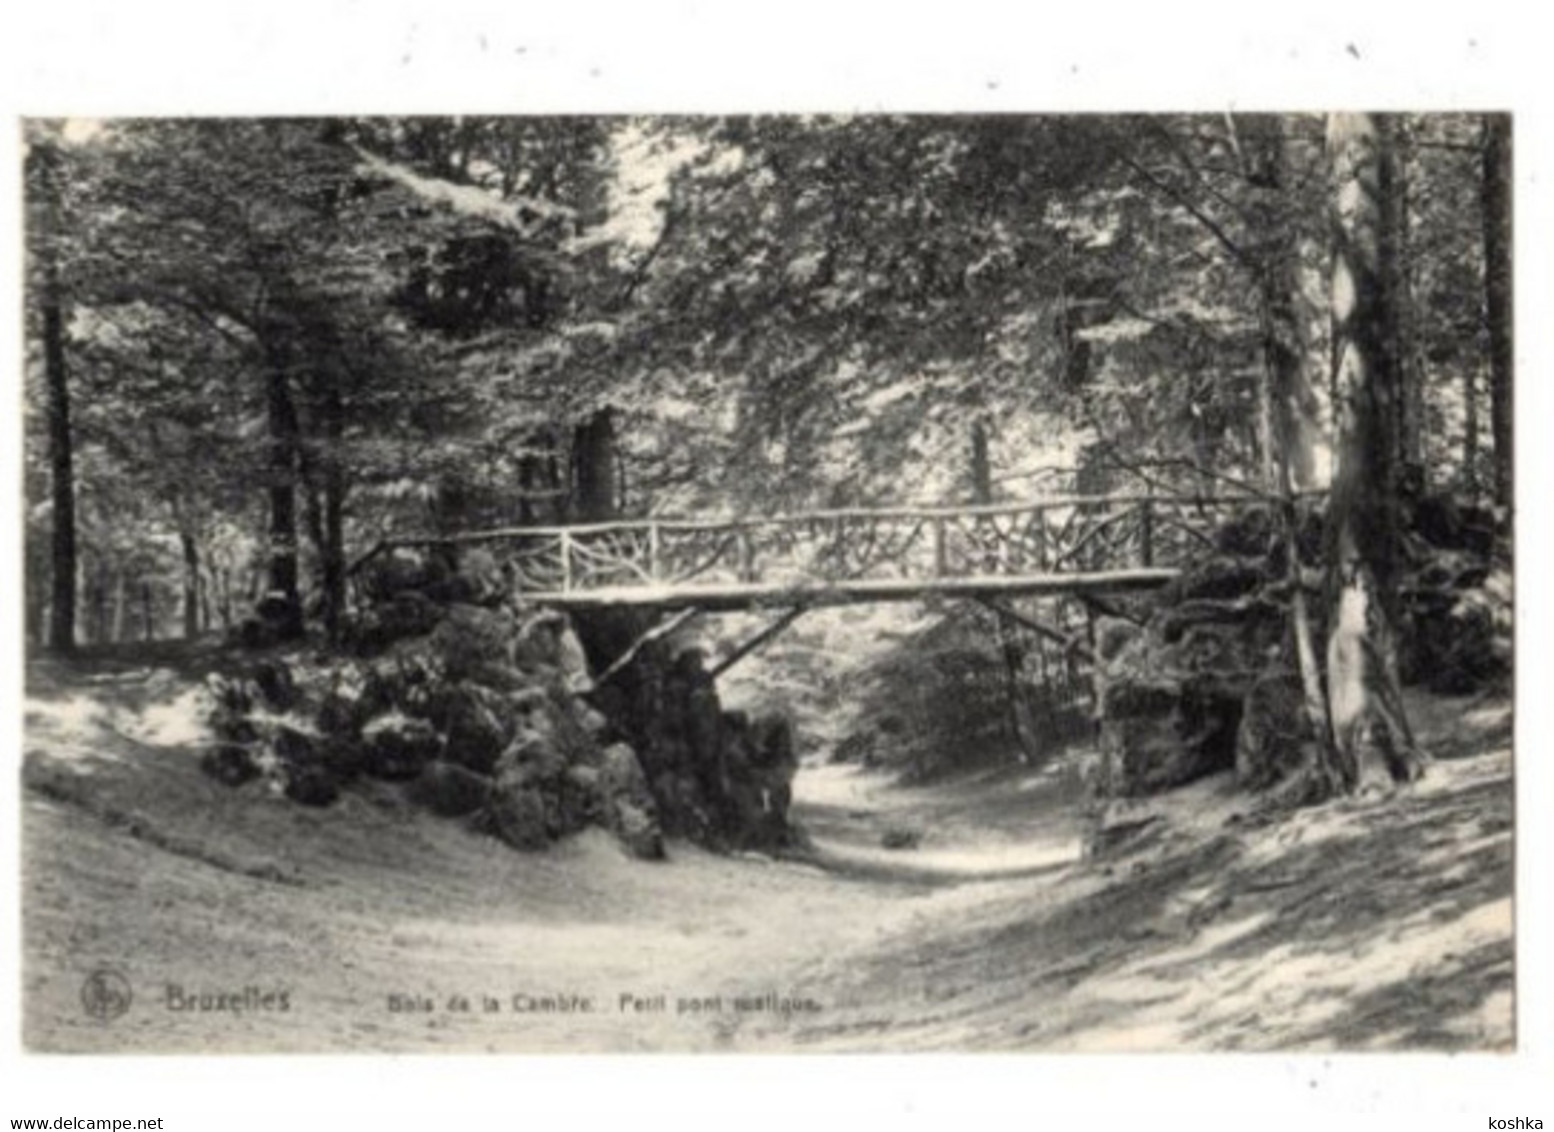 BRUXELLES - Brussel - Bois De Cambre - Petit Pont Rustique - 1913 - Nels Série 1no 258 - Forêts, Parcs, Jardins